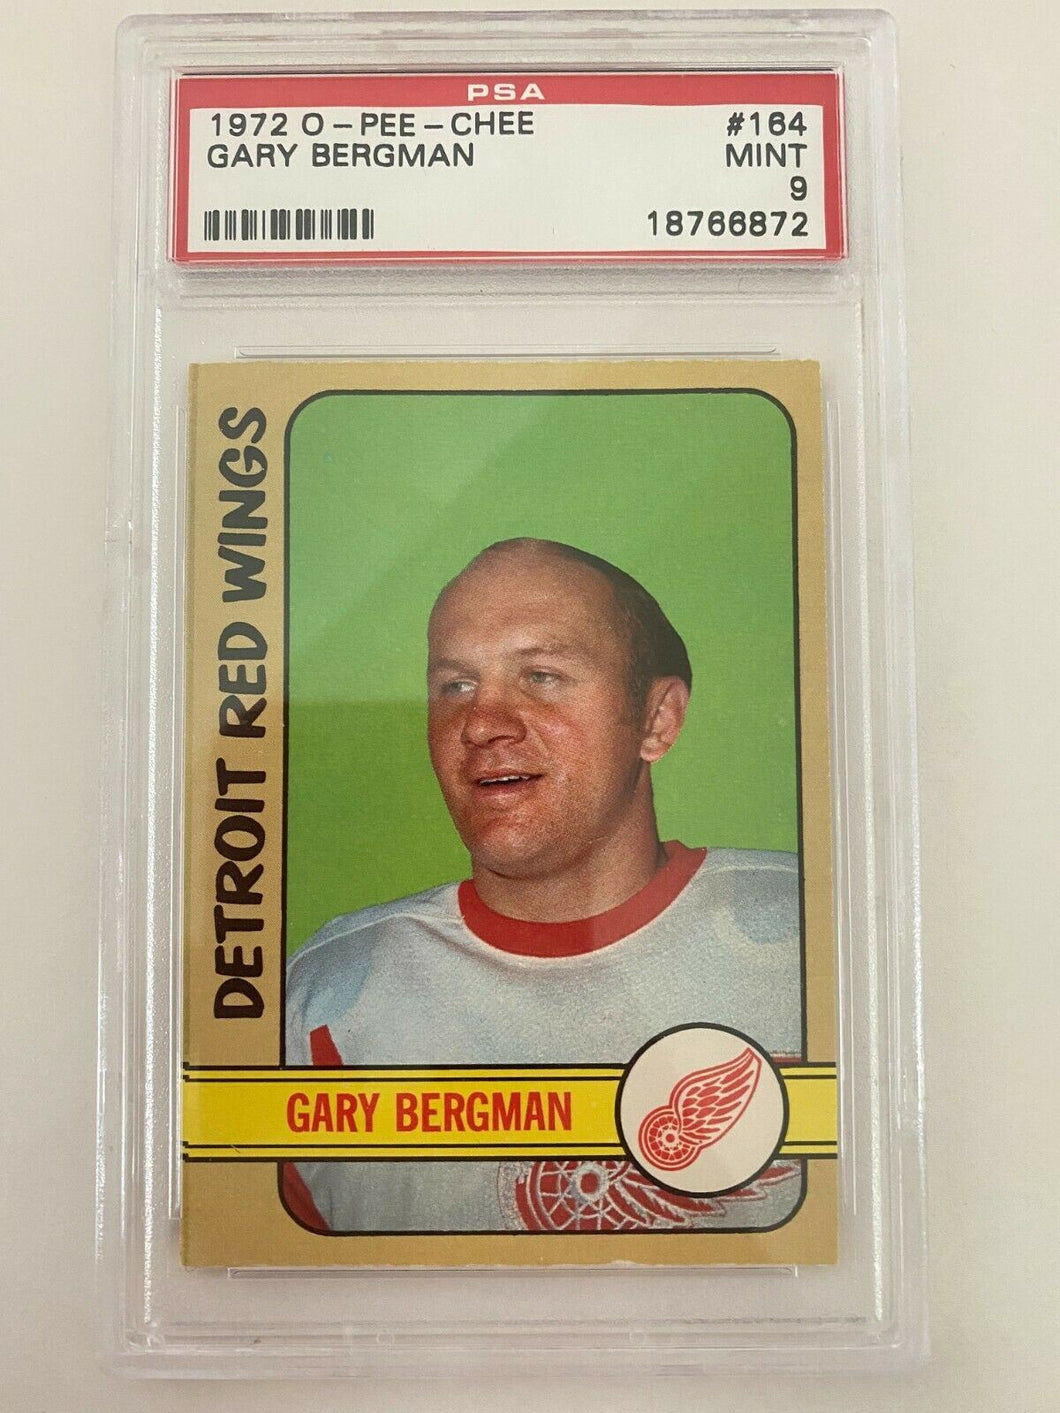 PSA Graded Mint 9  1972 O-pee-chee Gary Bergman Hockey Card #164